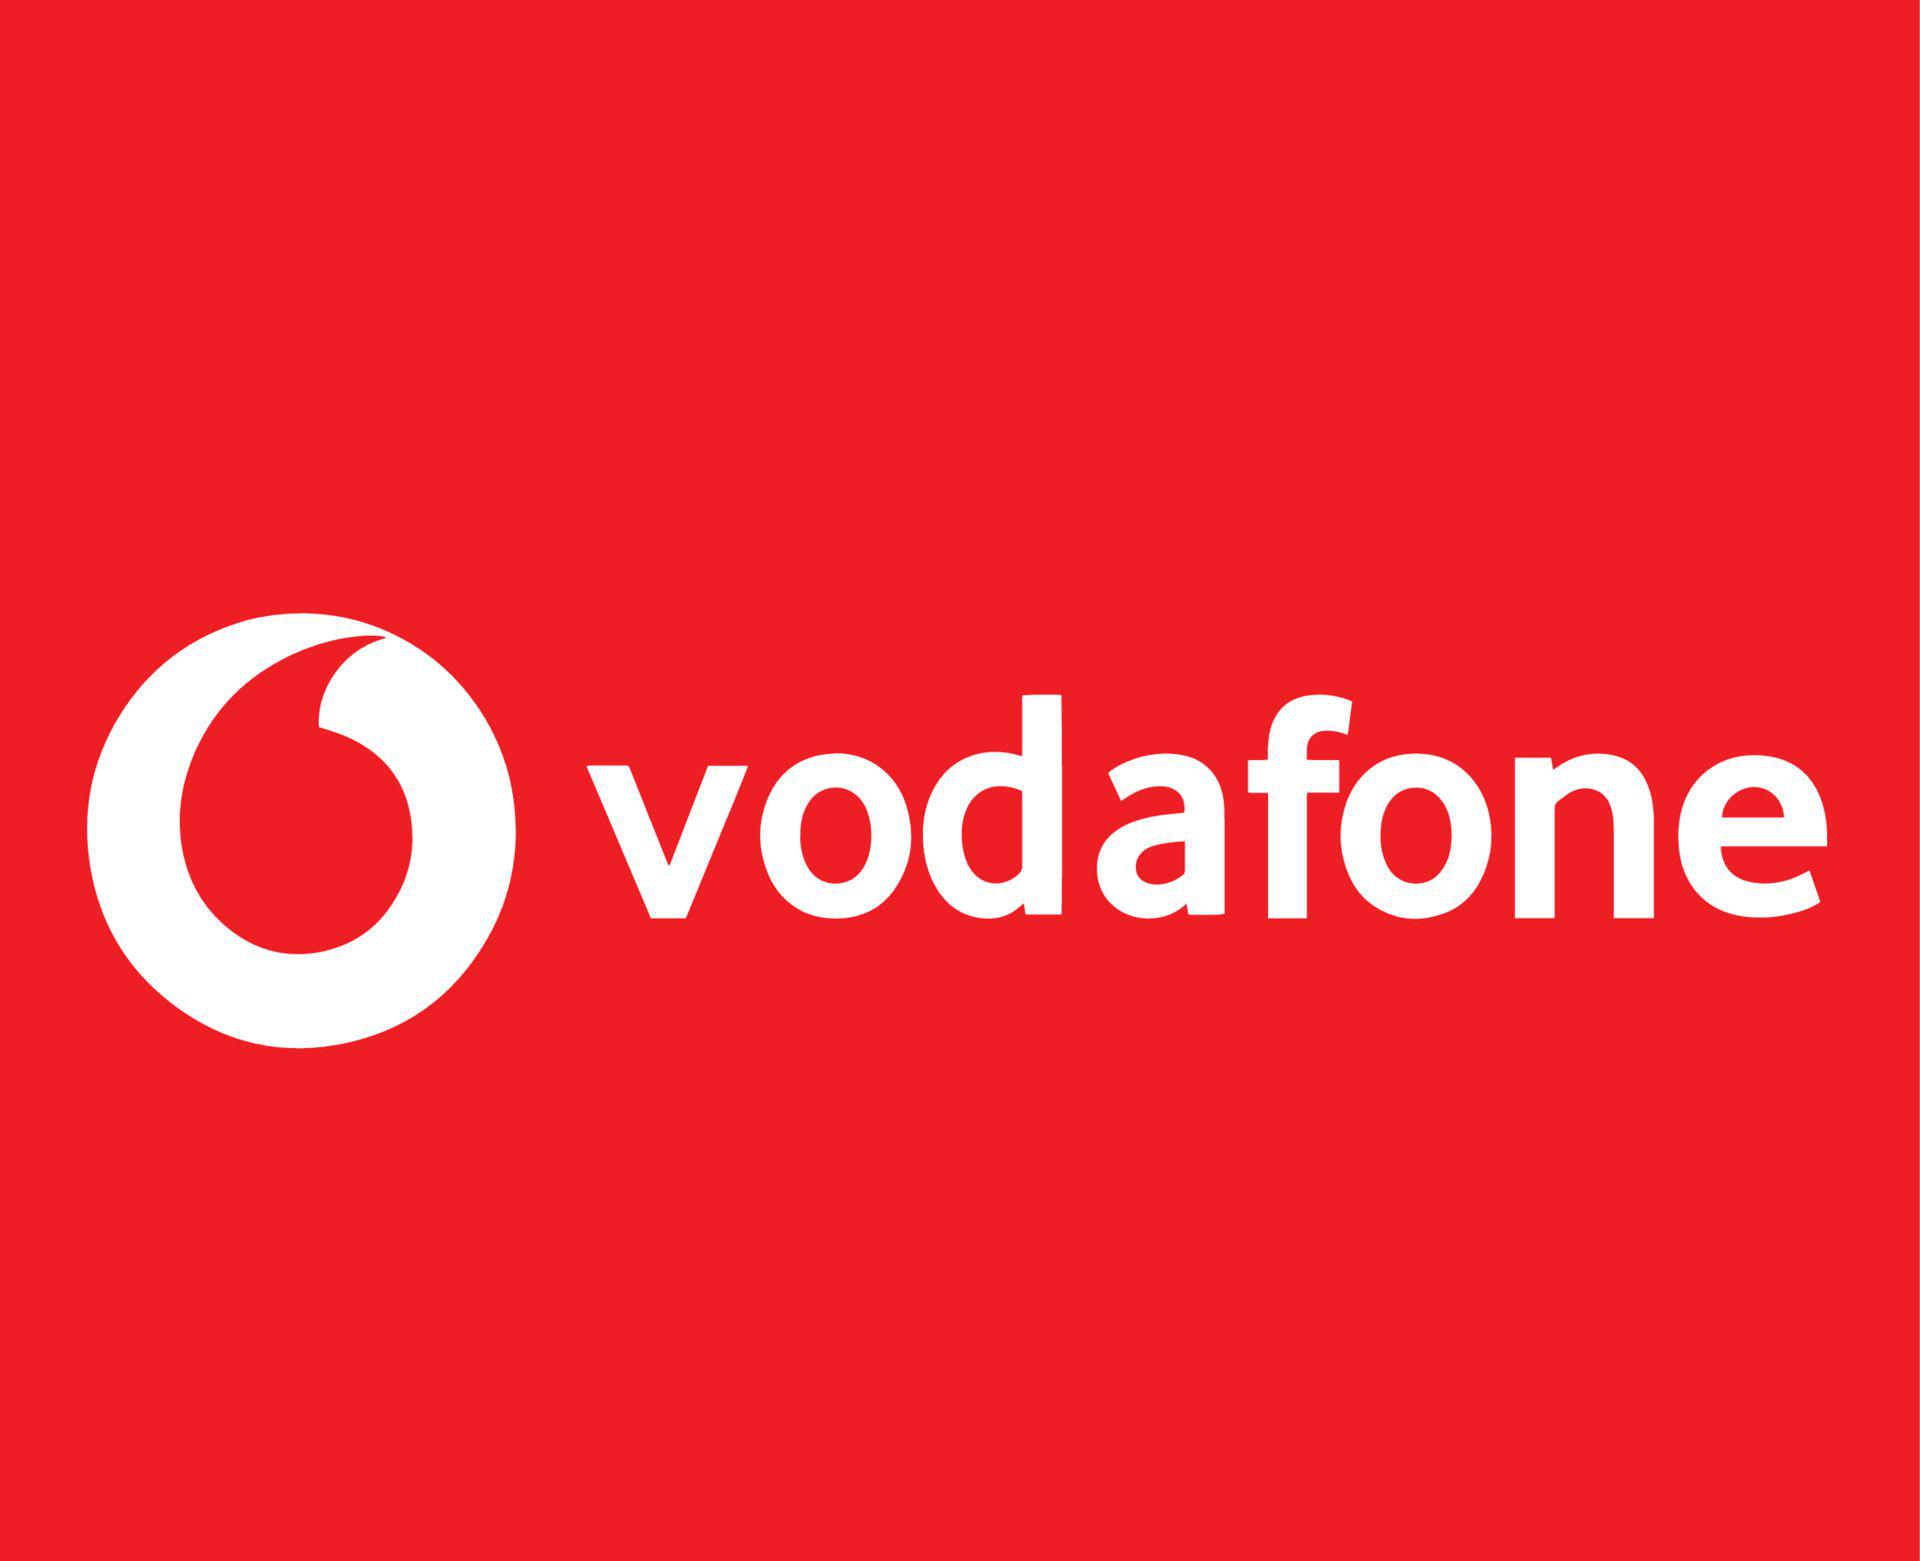 Vodafone tõstab lauatelefoniteenuste hindu